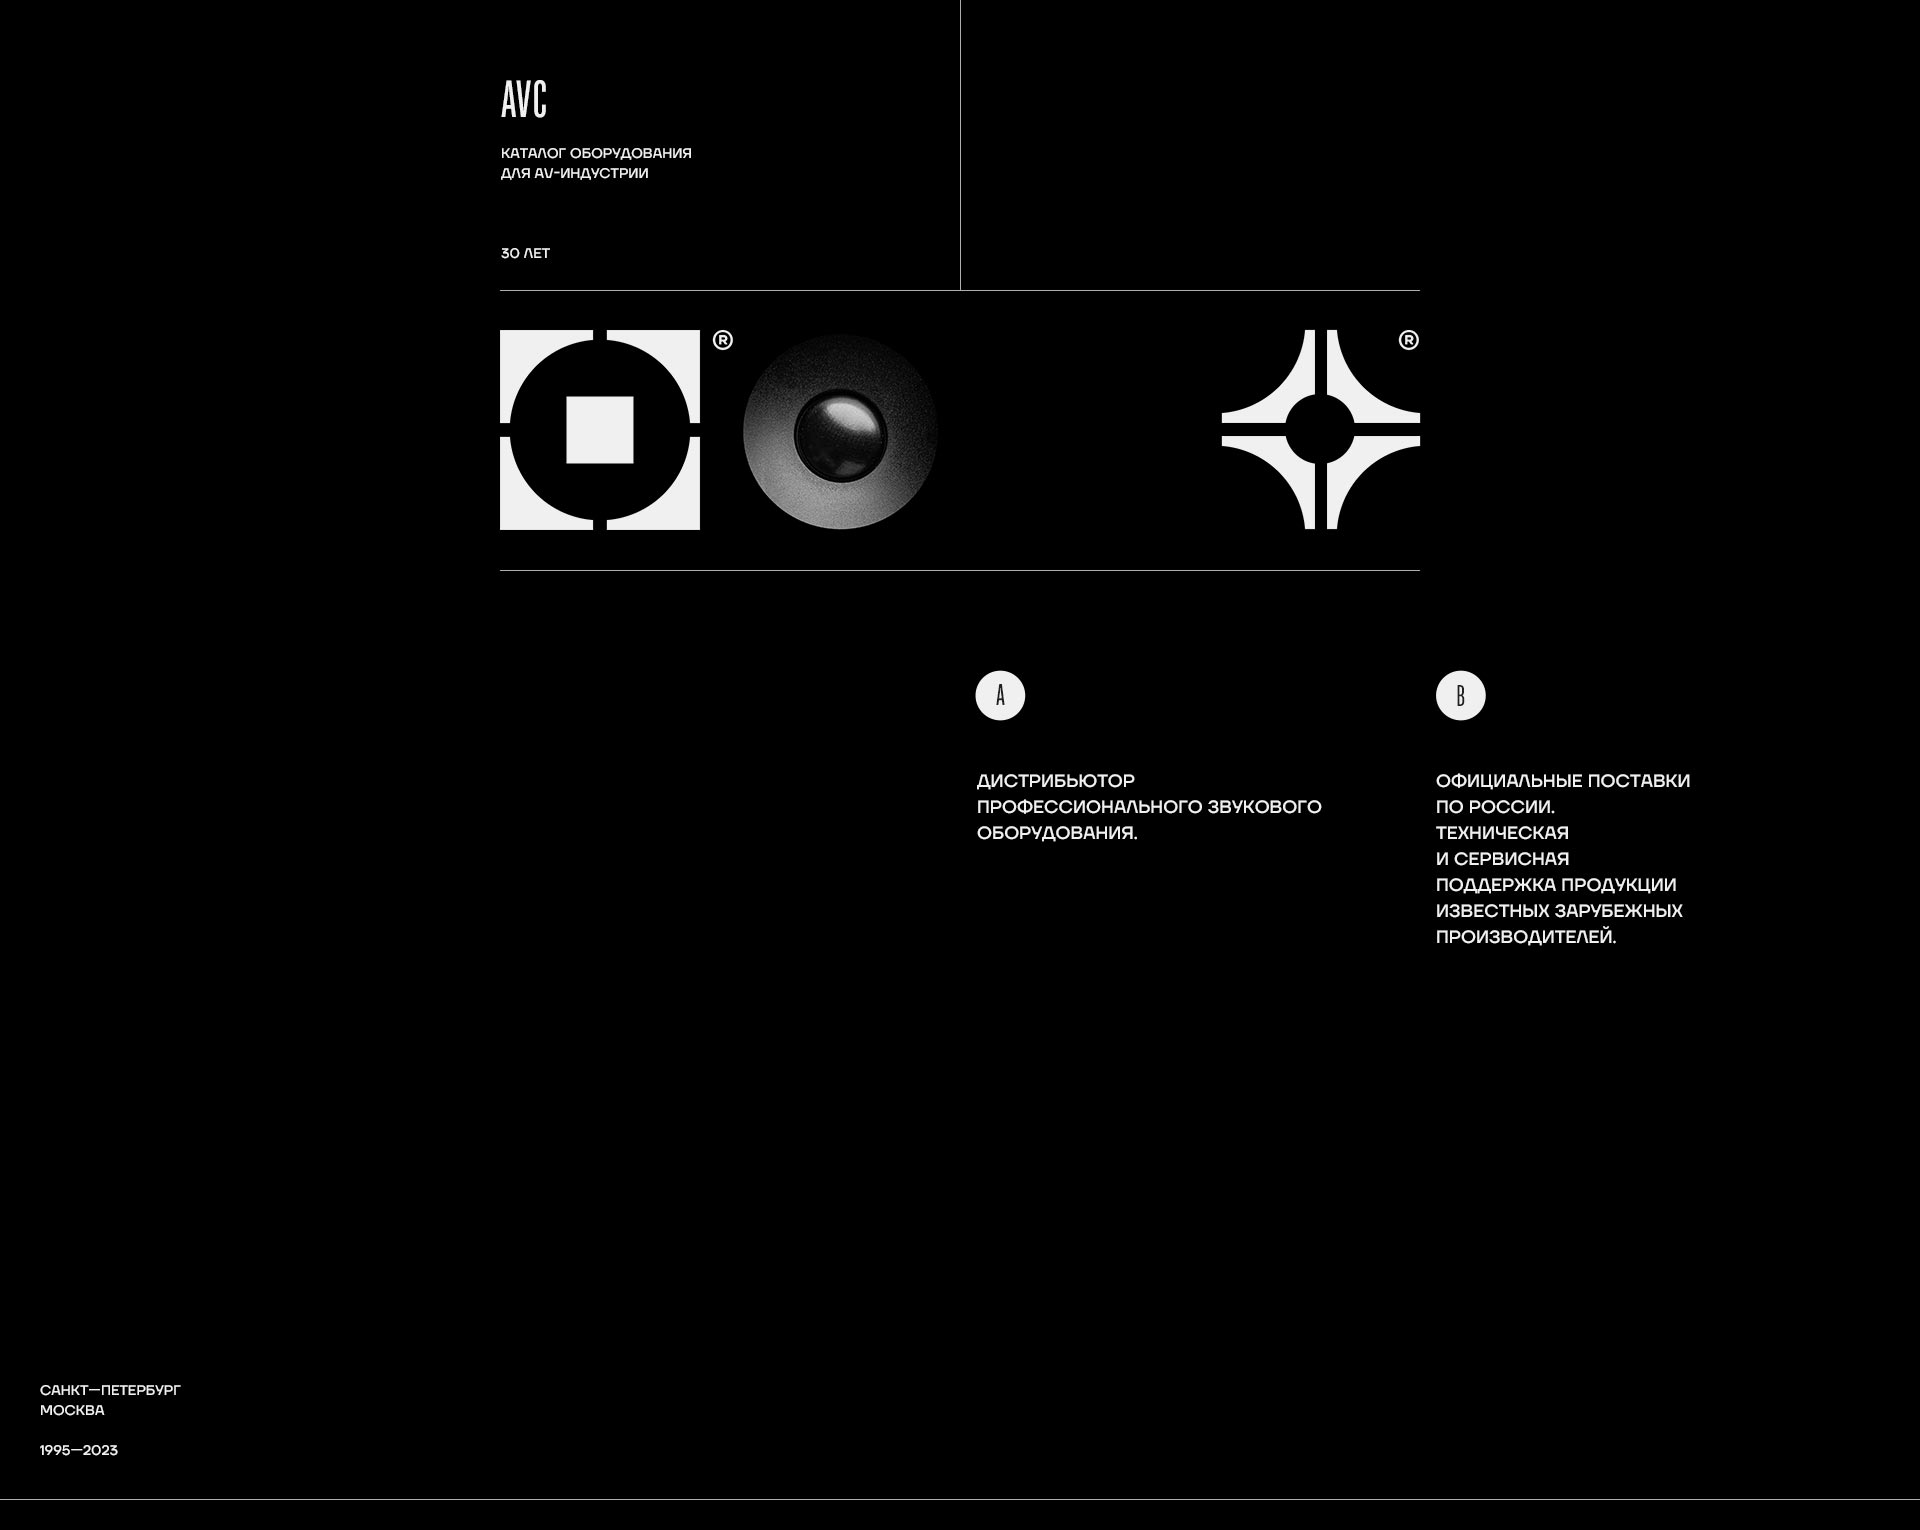 АВ—Центр — Изображение №3 — Интерфейсы, Анимация на Dprofile